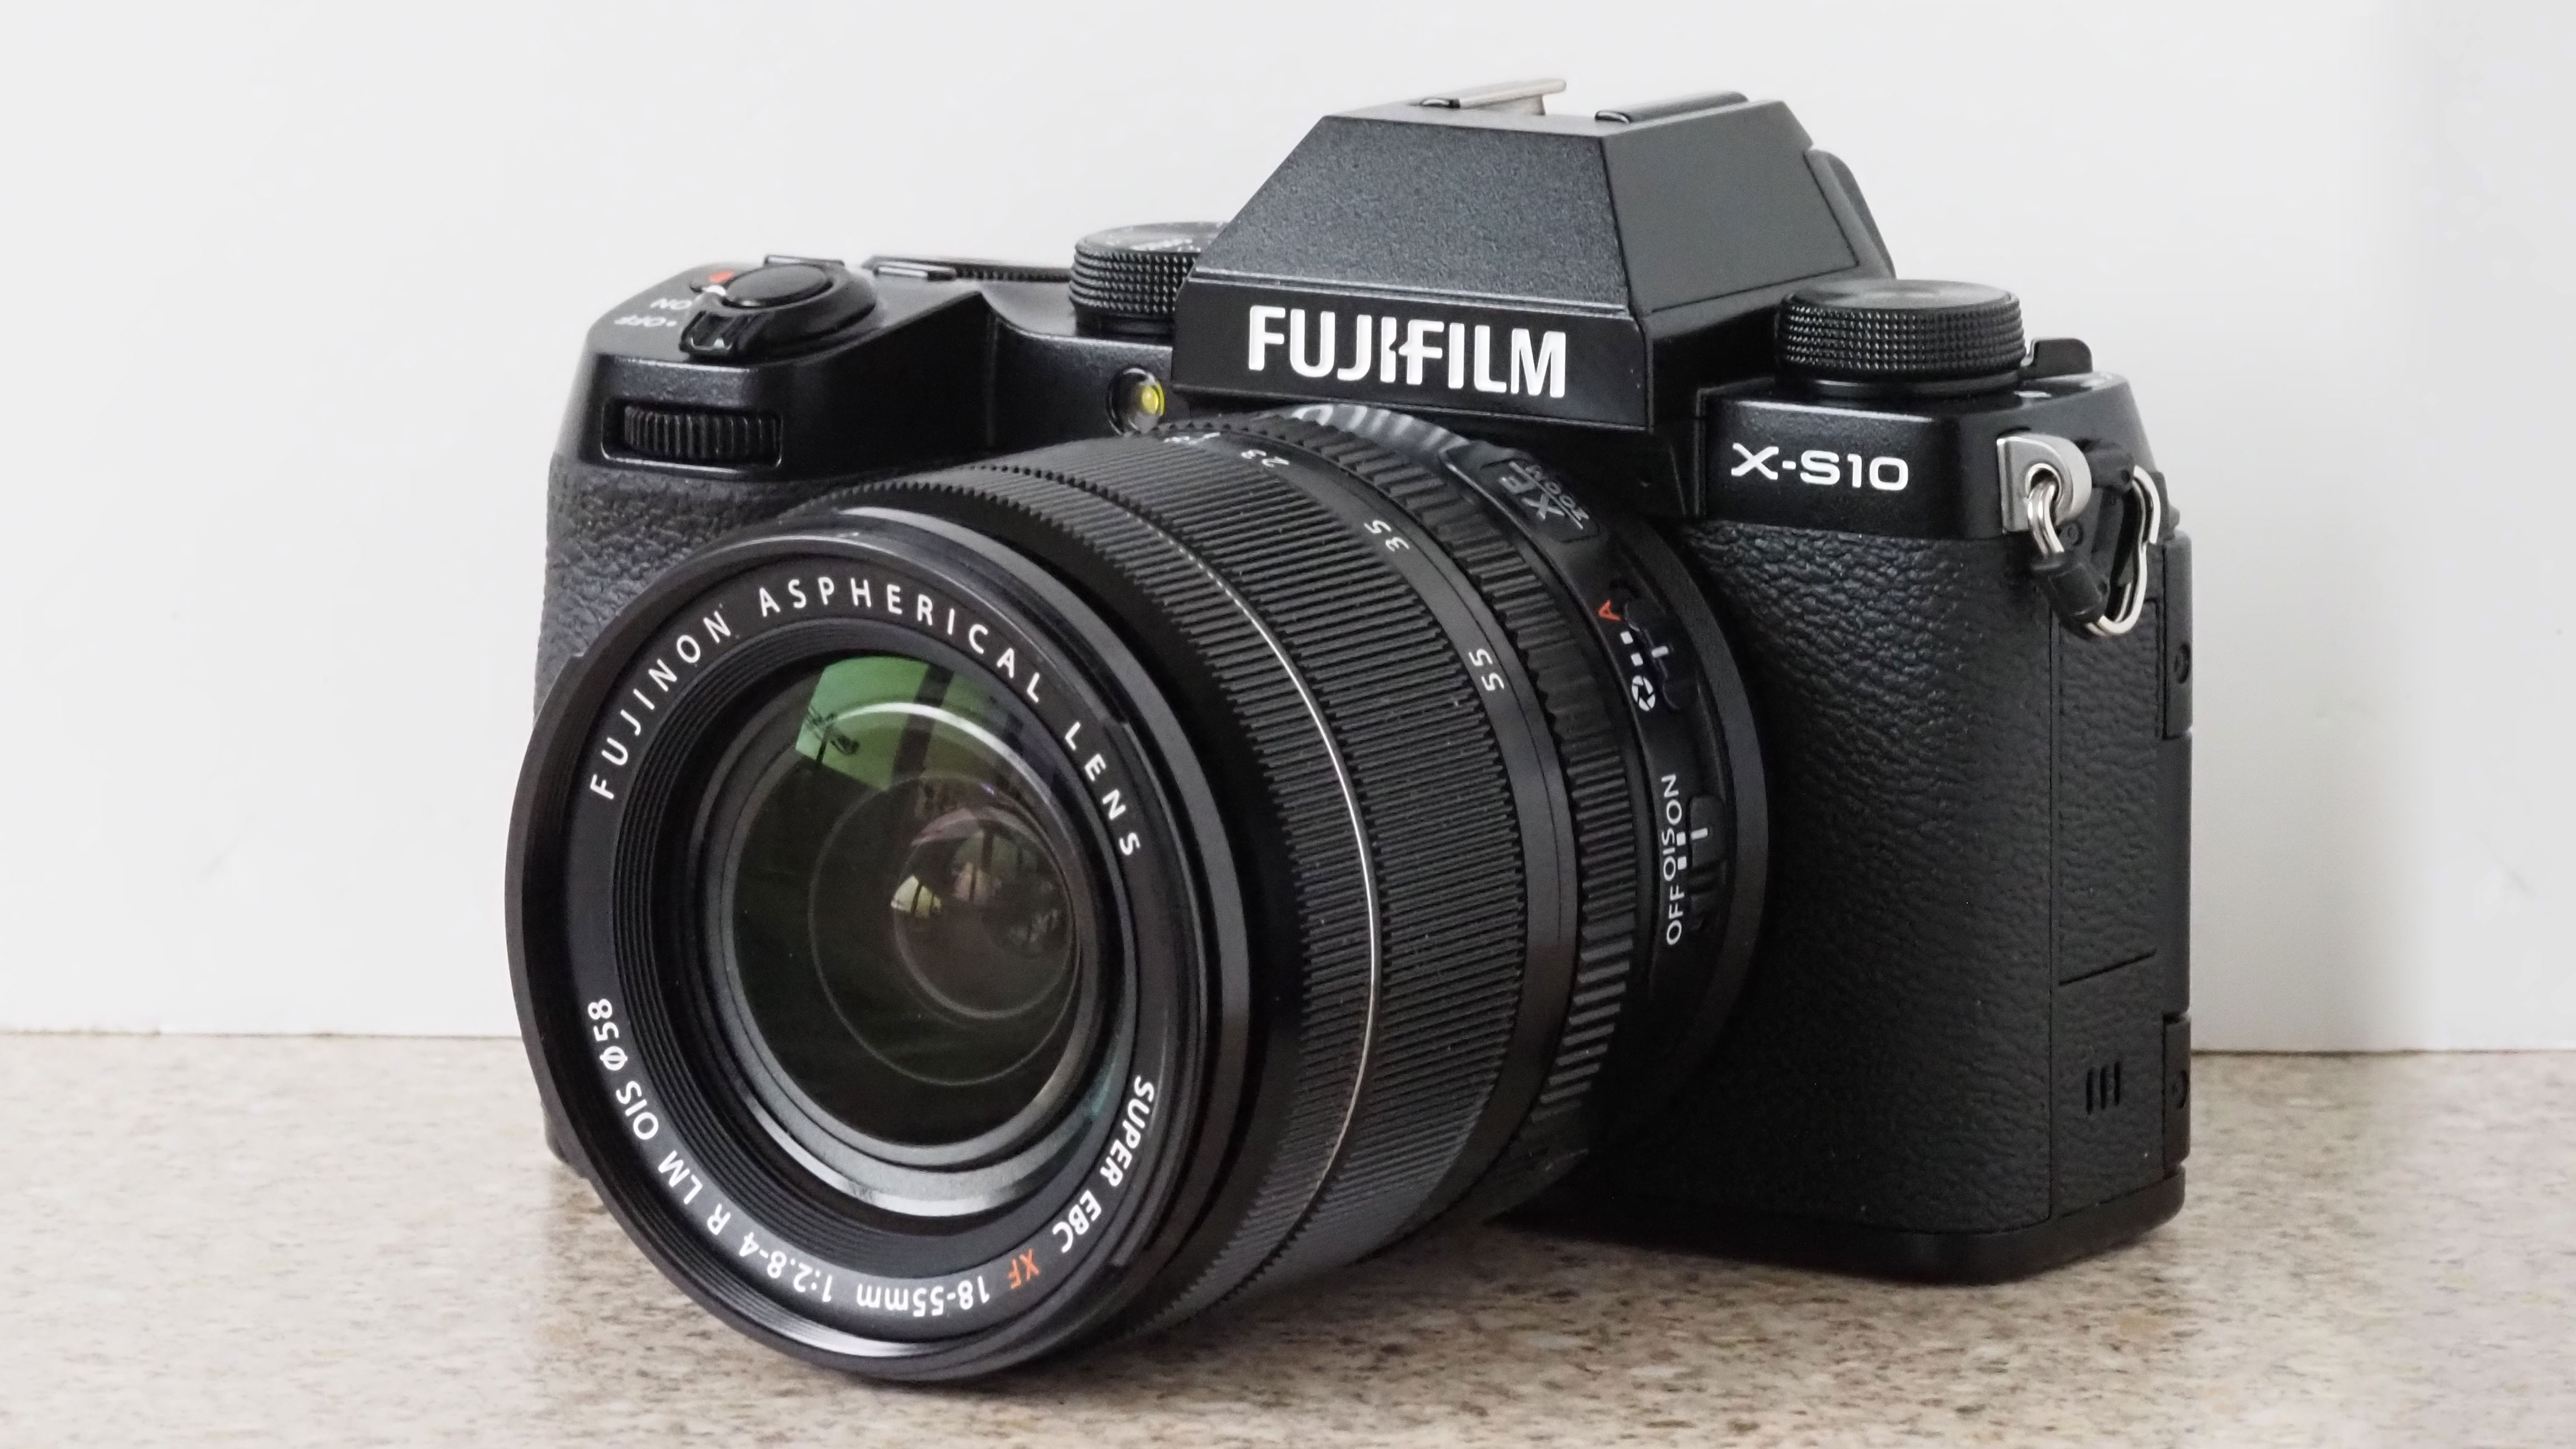 Best camera: Fujifilm x-s10